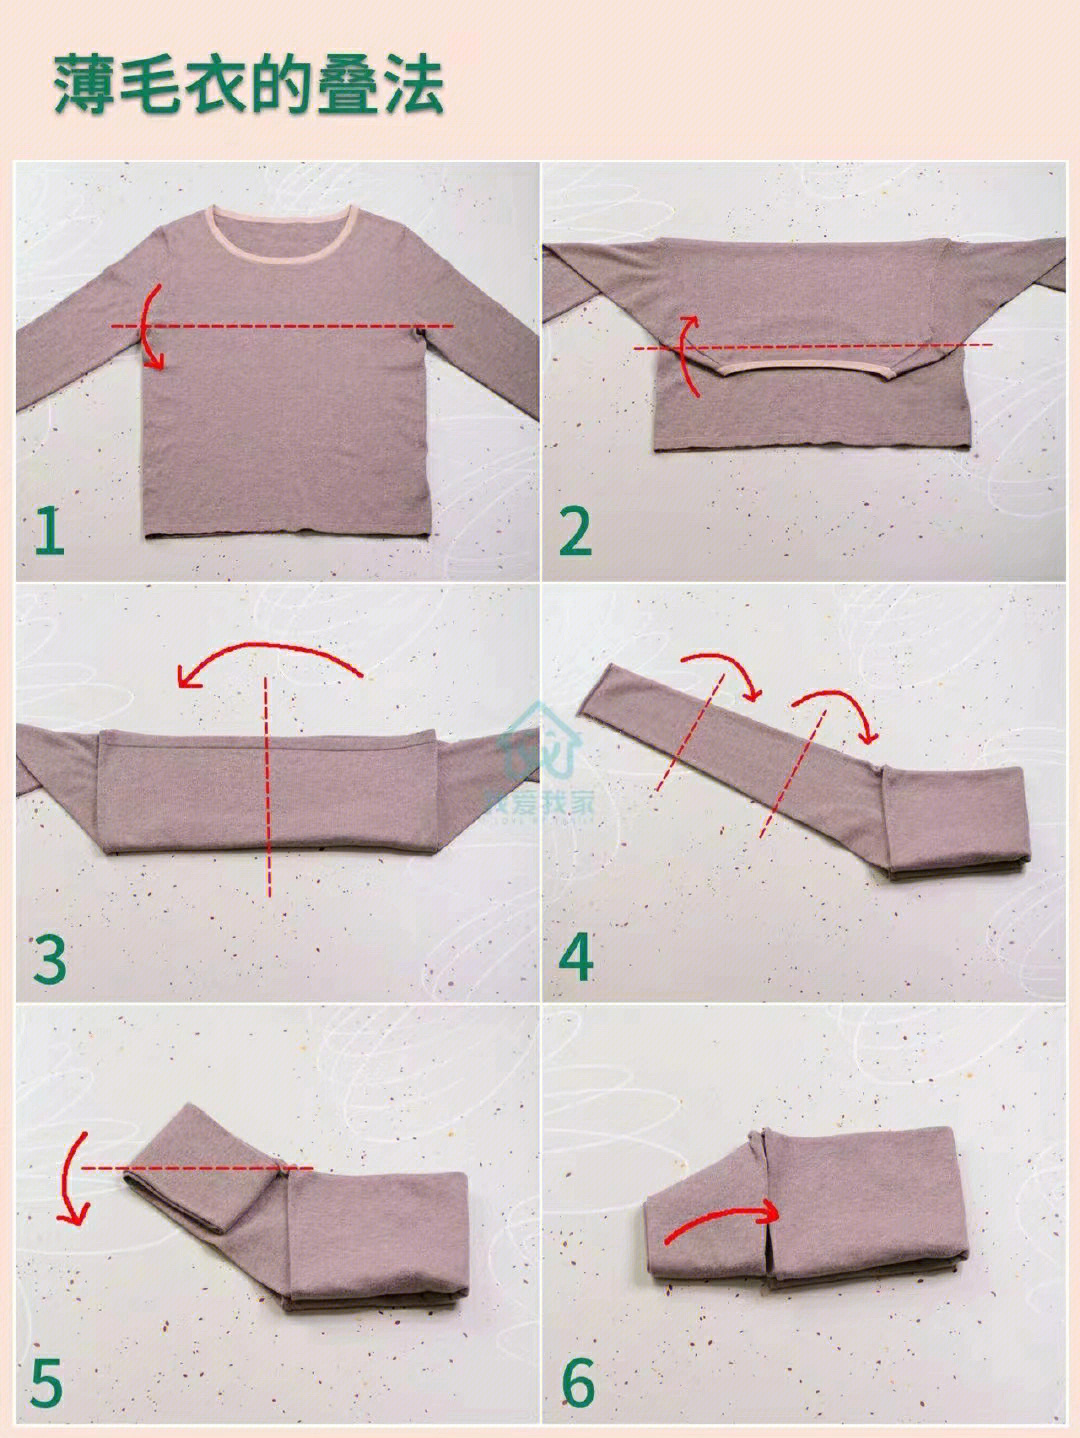 不合理的毛衣折叠或悬挂都会直接破坏毛衣的材质74最实用的毛衣整理